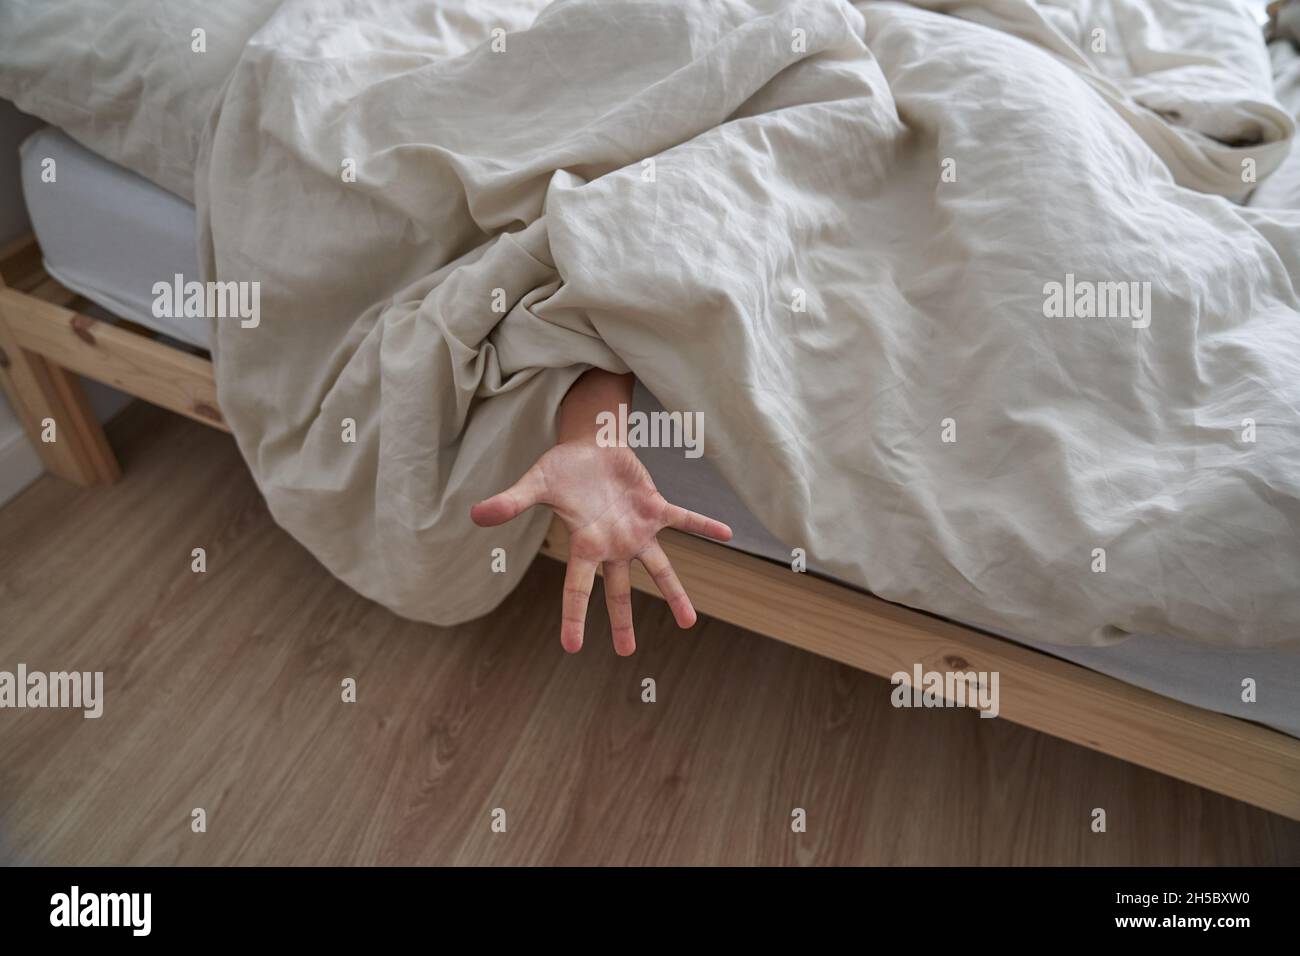 Primo piano della mano di un bambino, sdraiato a letto la mattina, la mano che sporge da sotto la coperta. Foto di alta qualità Foto Stock